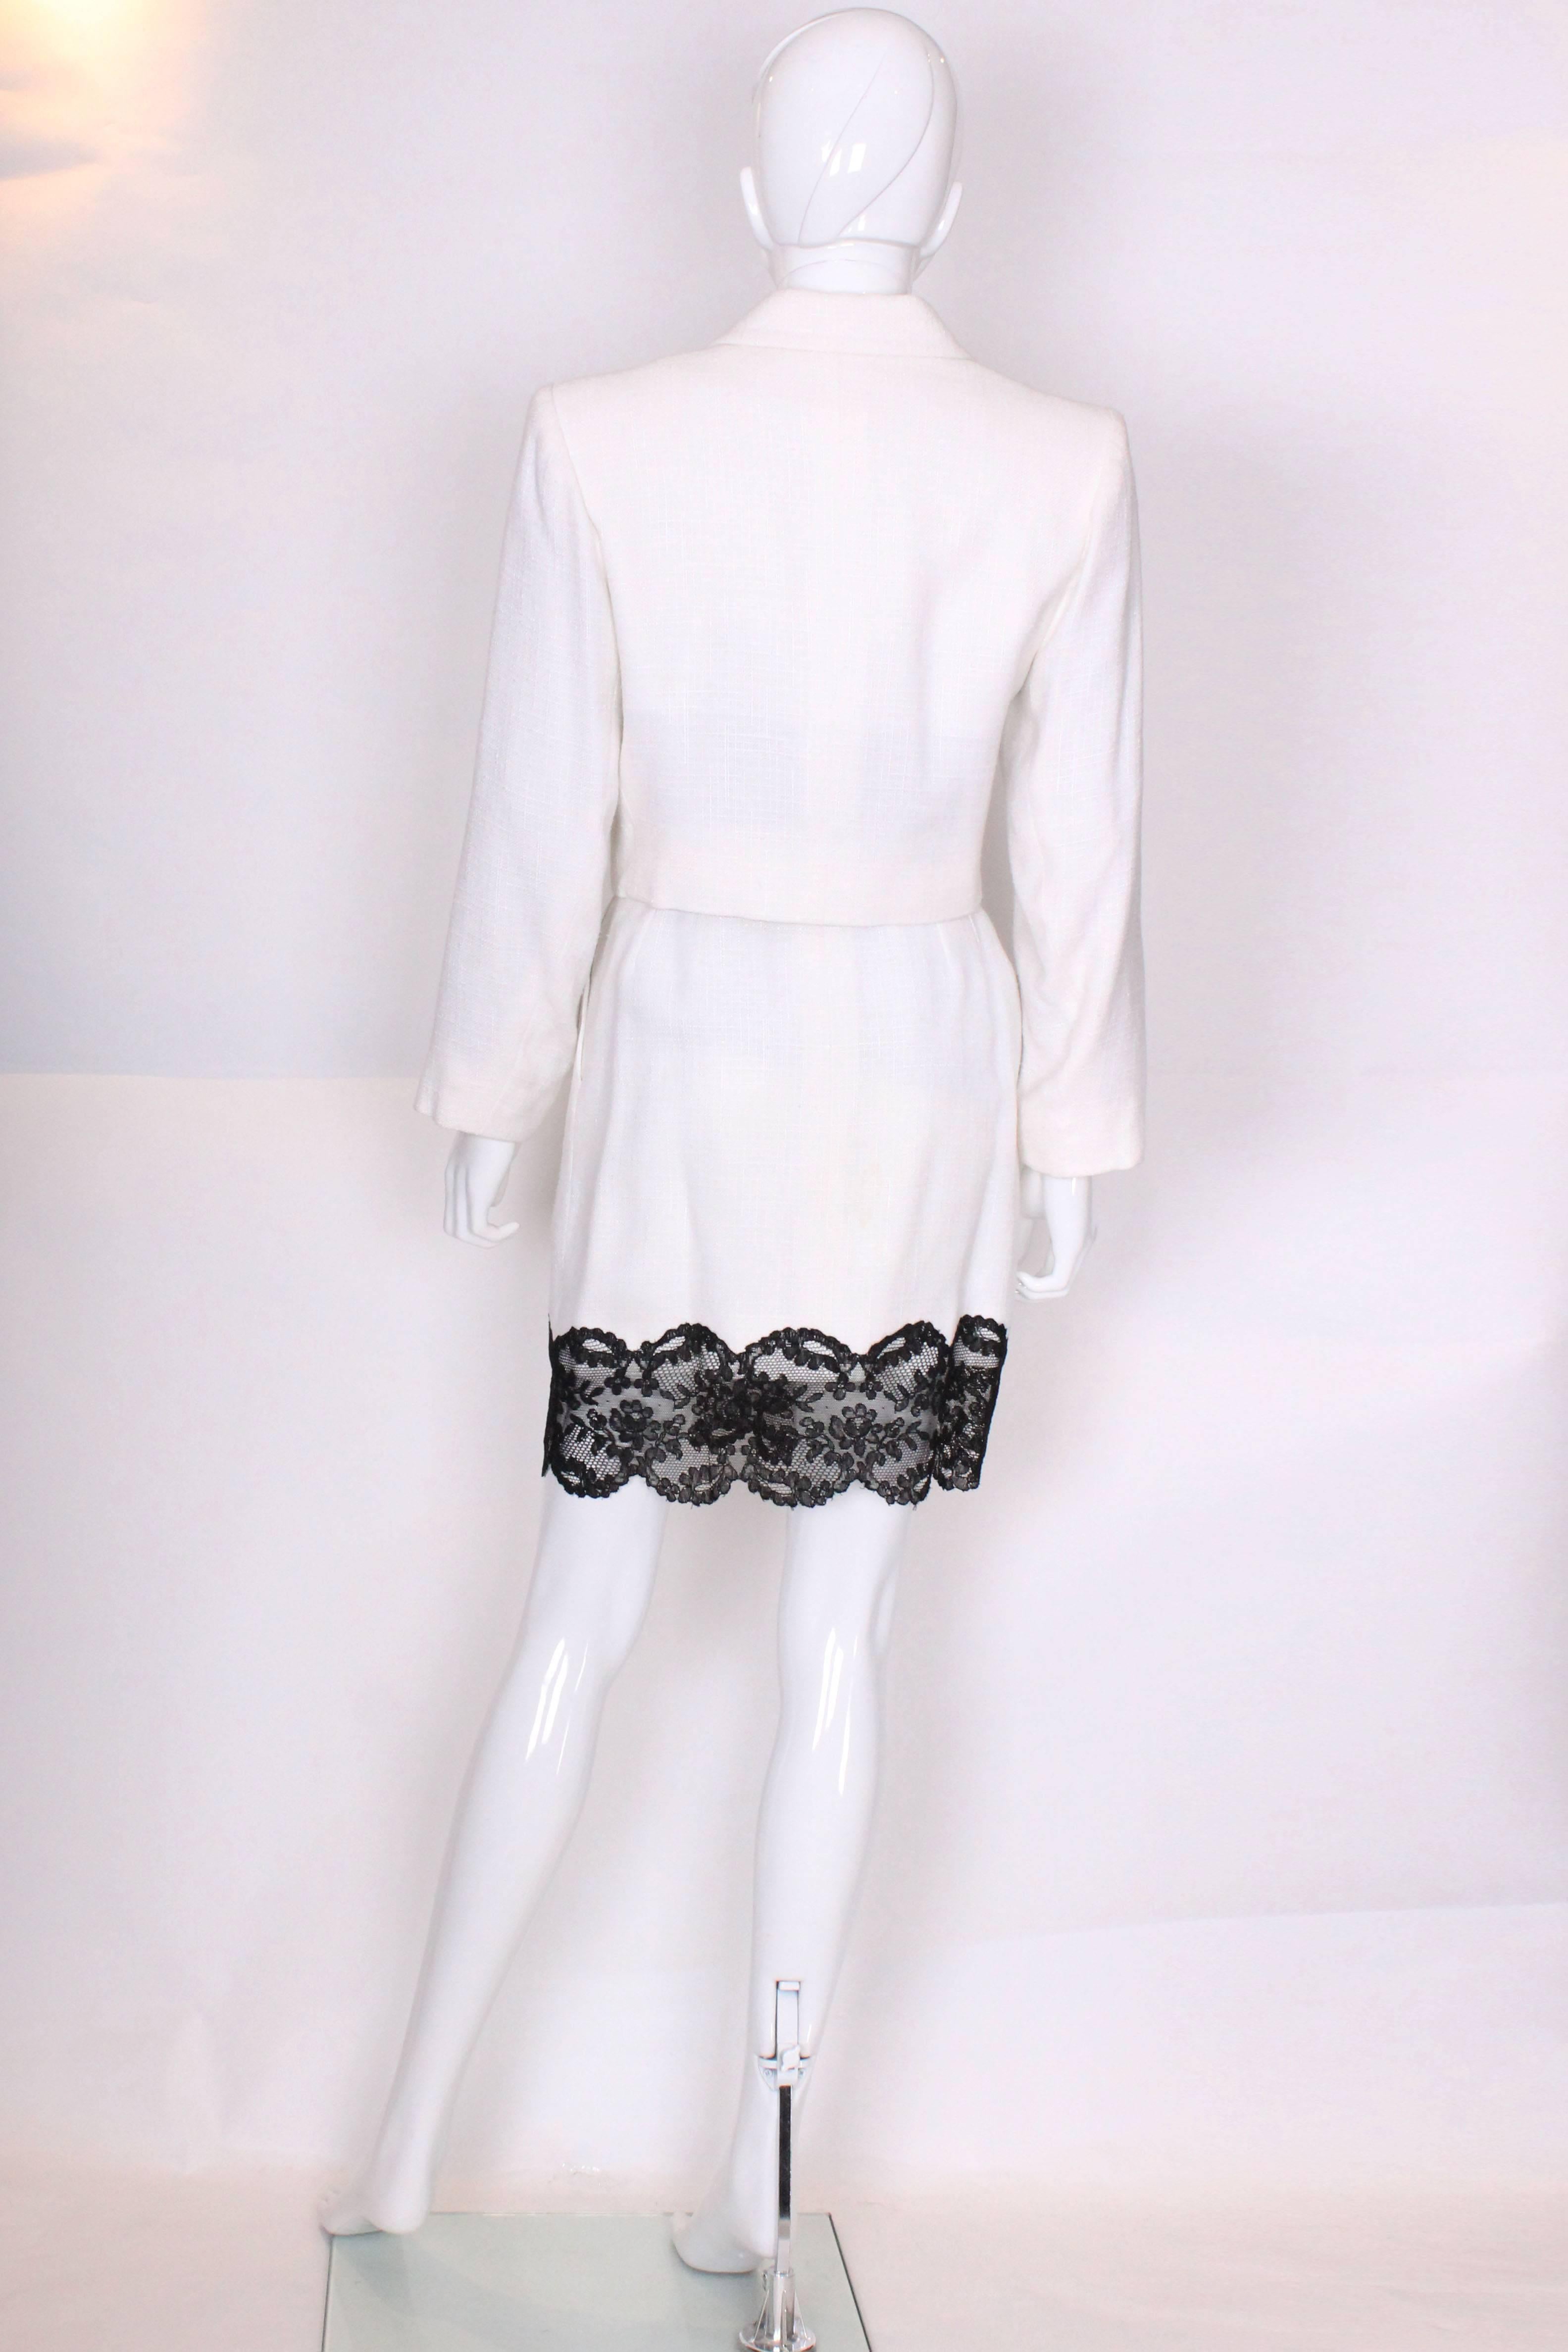 Women's A vintage 1990s white with black lace trim Yves Saint Laurent Skirt Suit